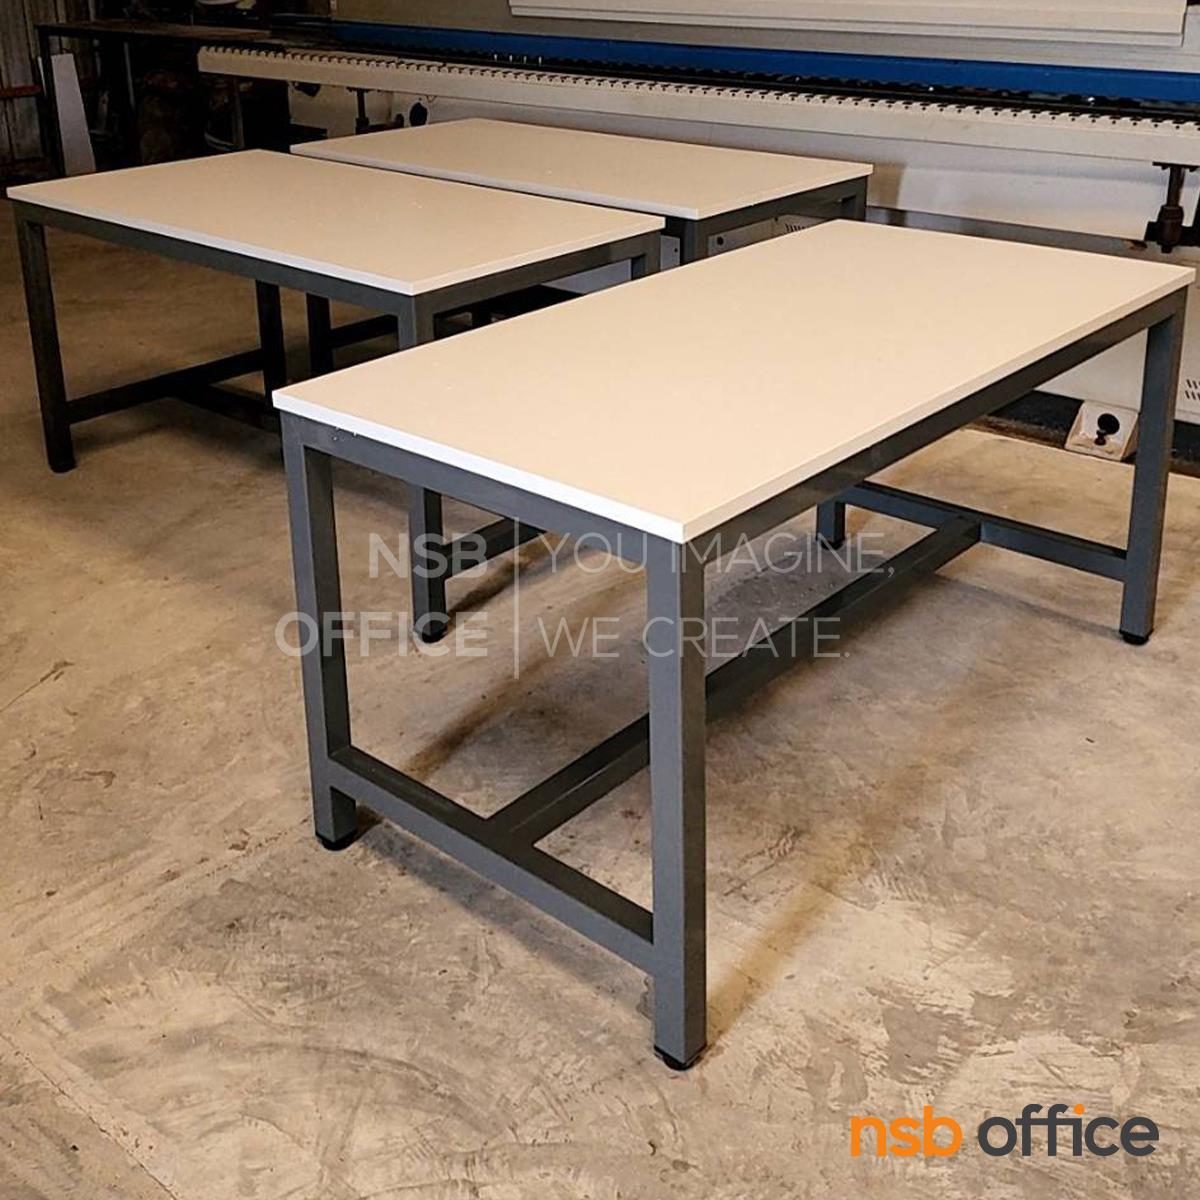 โต๊ะกันสั่น รุ่น Purecloud (เพียวคลาวด์) ขนาด 80W, 100W, 120W, 150W cm. หน้าท็อป HPL และ คอมแพคลามิเนต ขาเหล็ก